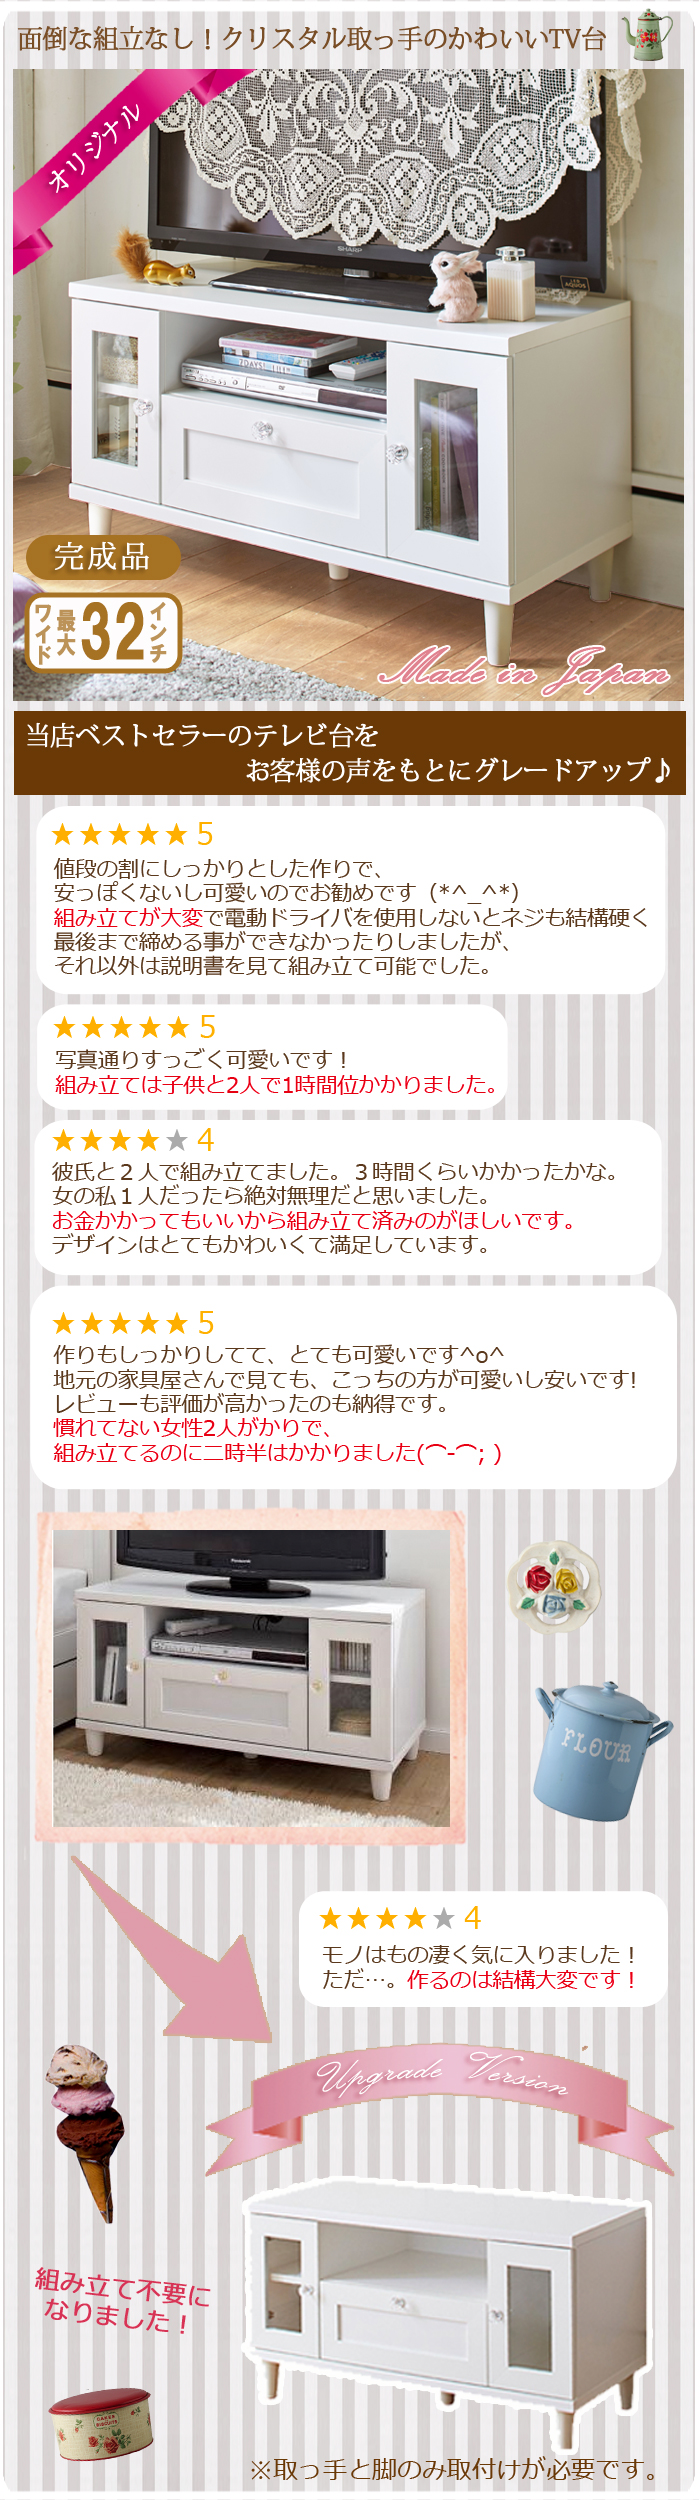 【楽天市場】テレビ台 TV台 完成品 日本製 可愛い お洒落 コンパクト 32型 シンプル 引出し付 白 ローボード テレビボード TVボード